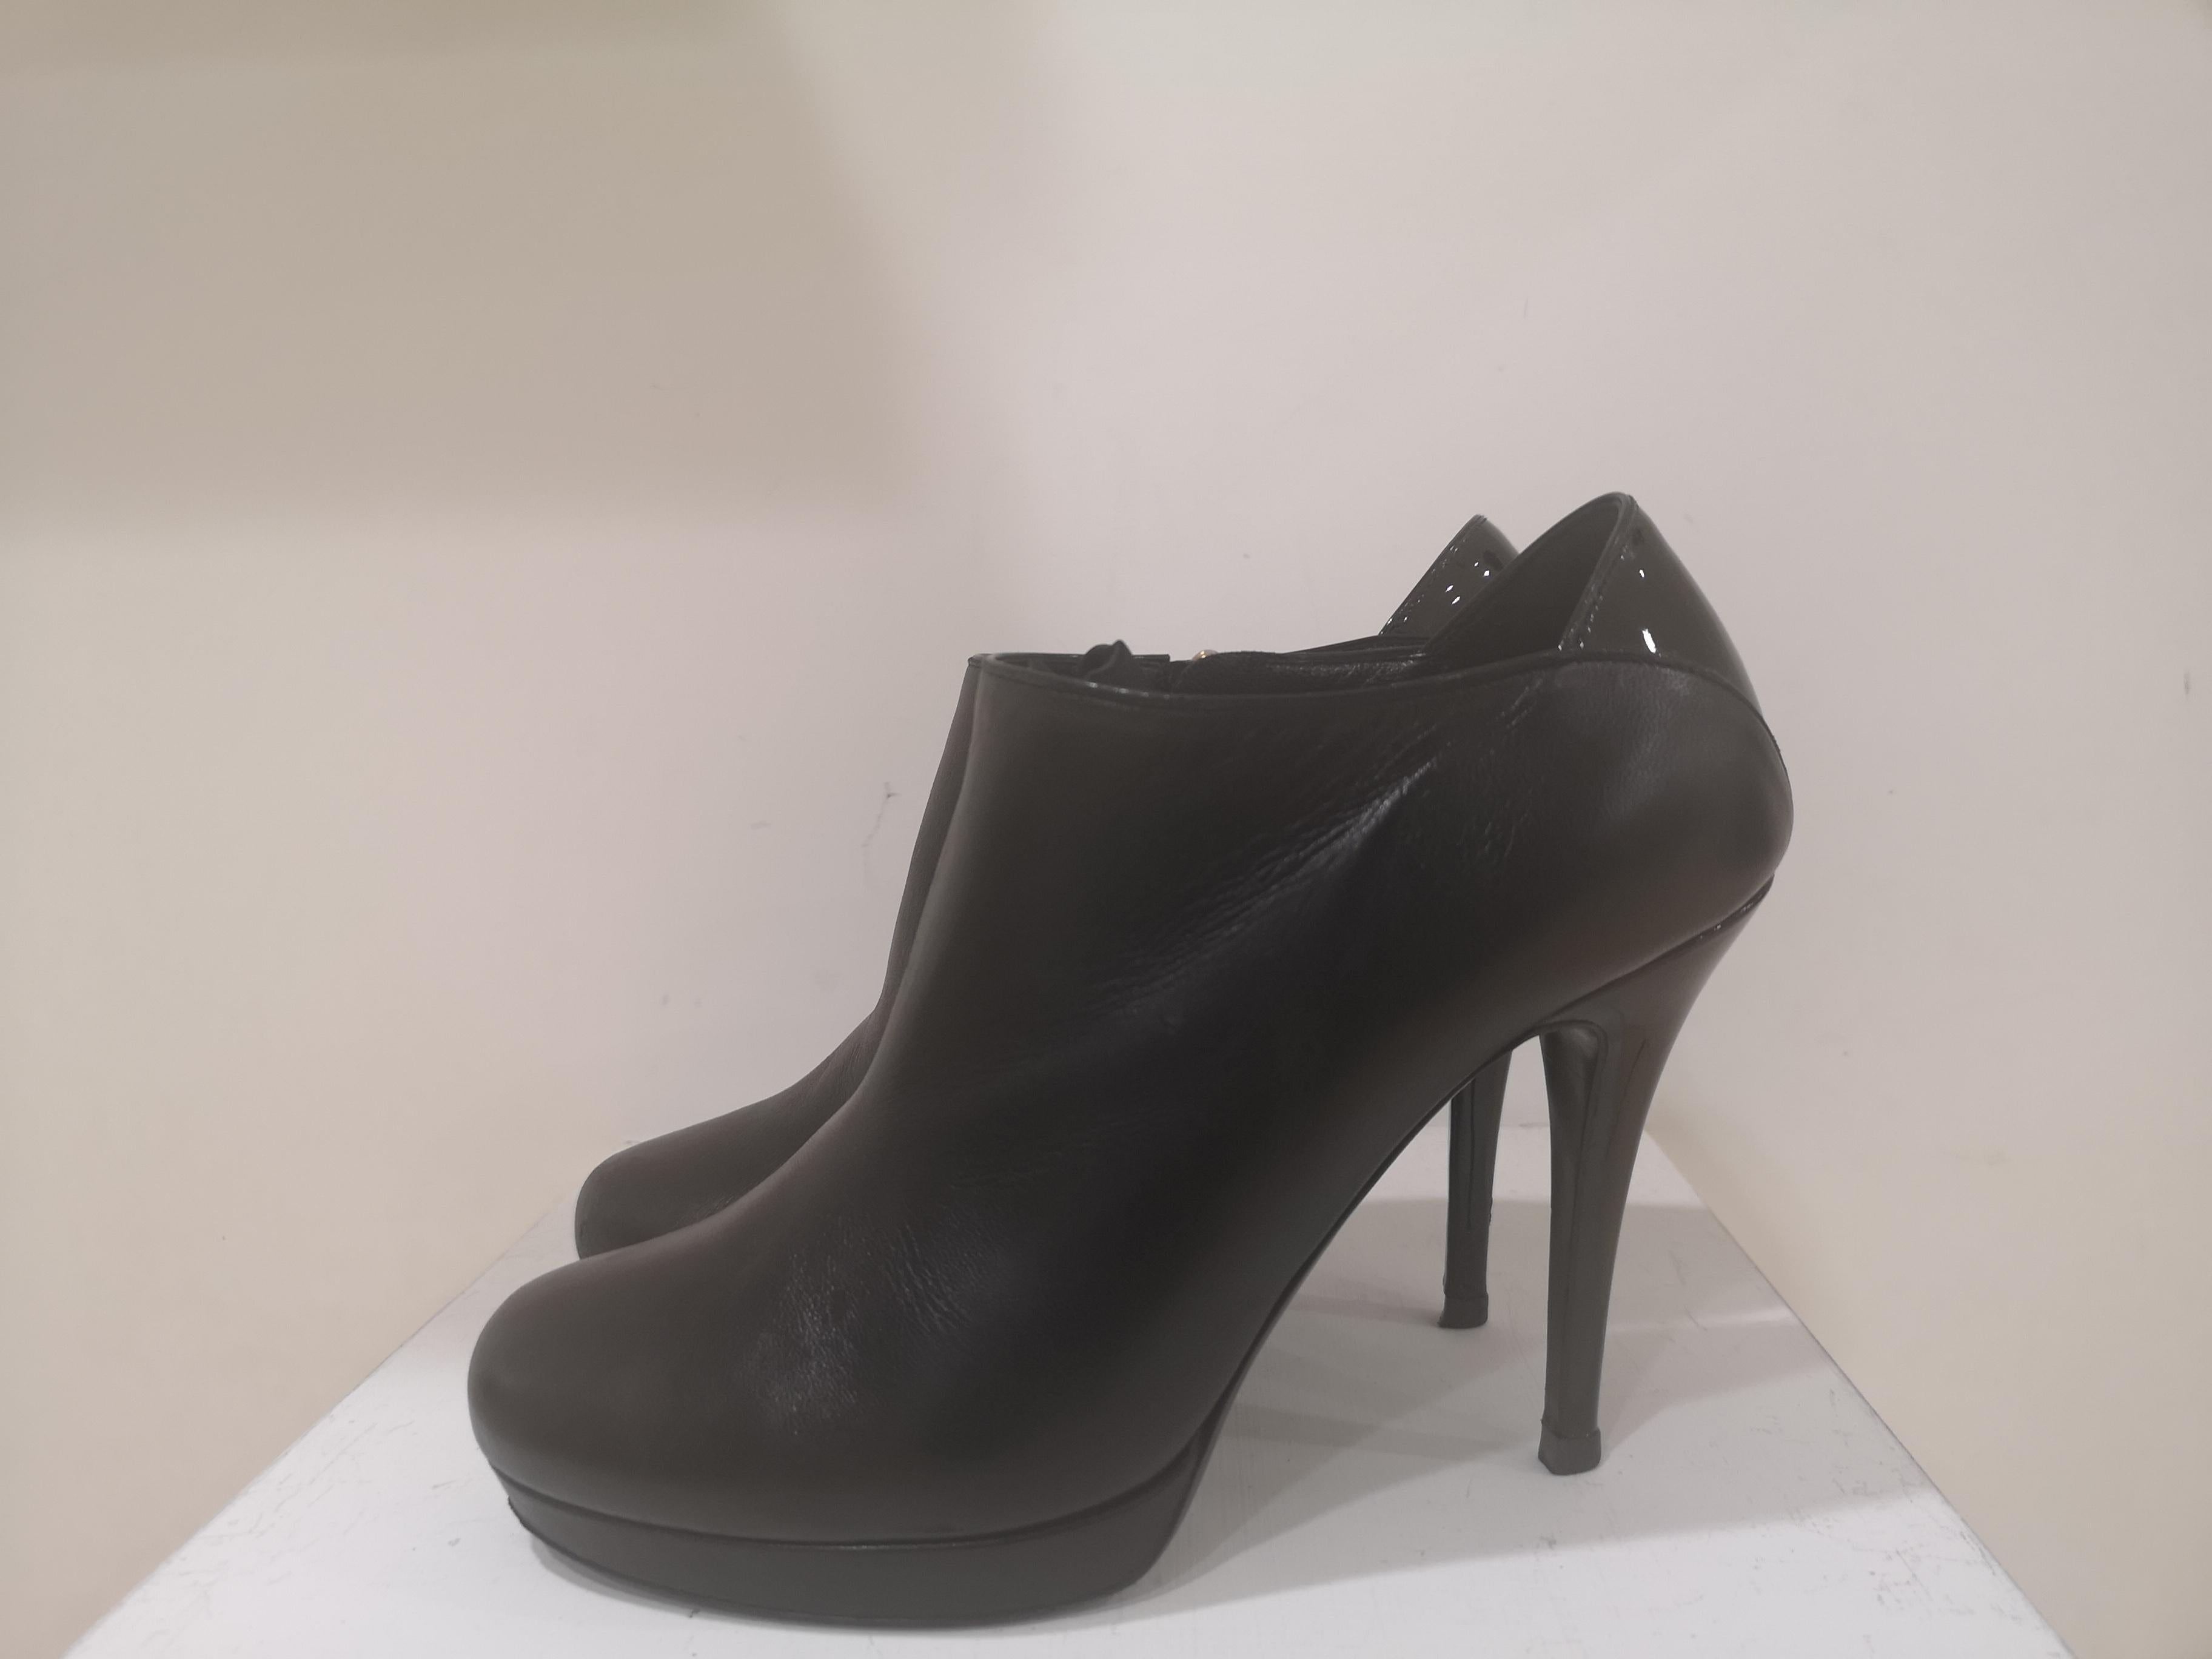 Yves Saint Laurent Black Shoes
size it 39